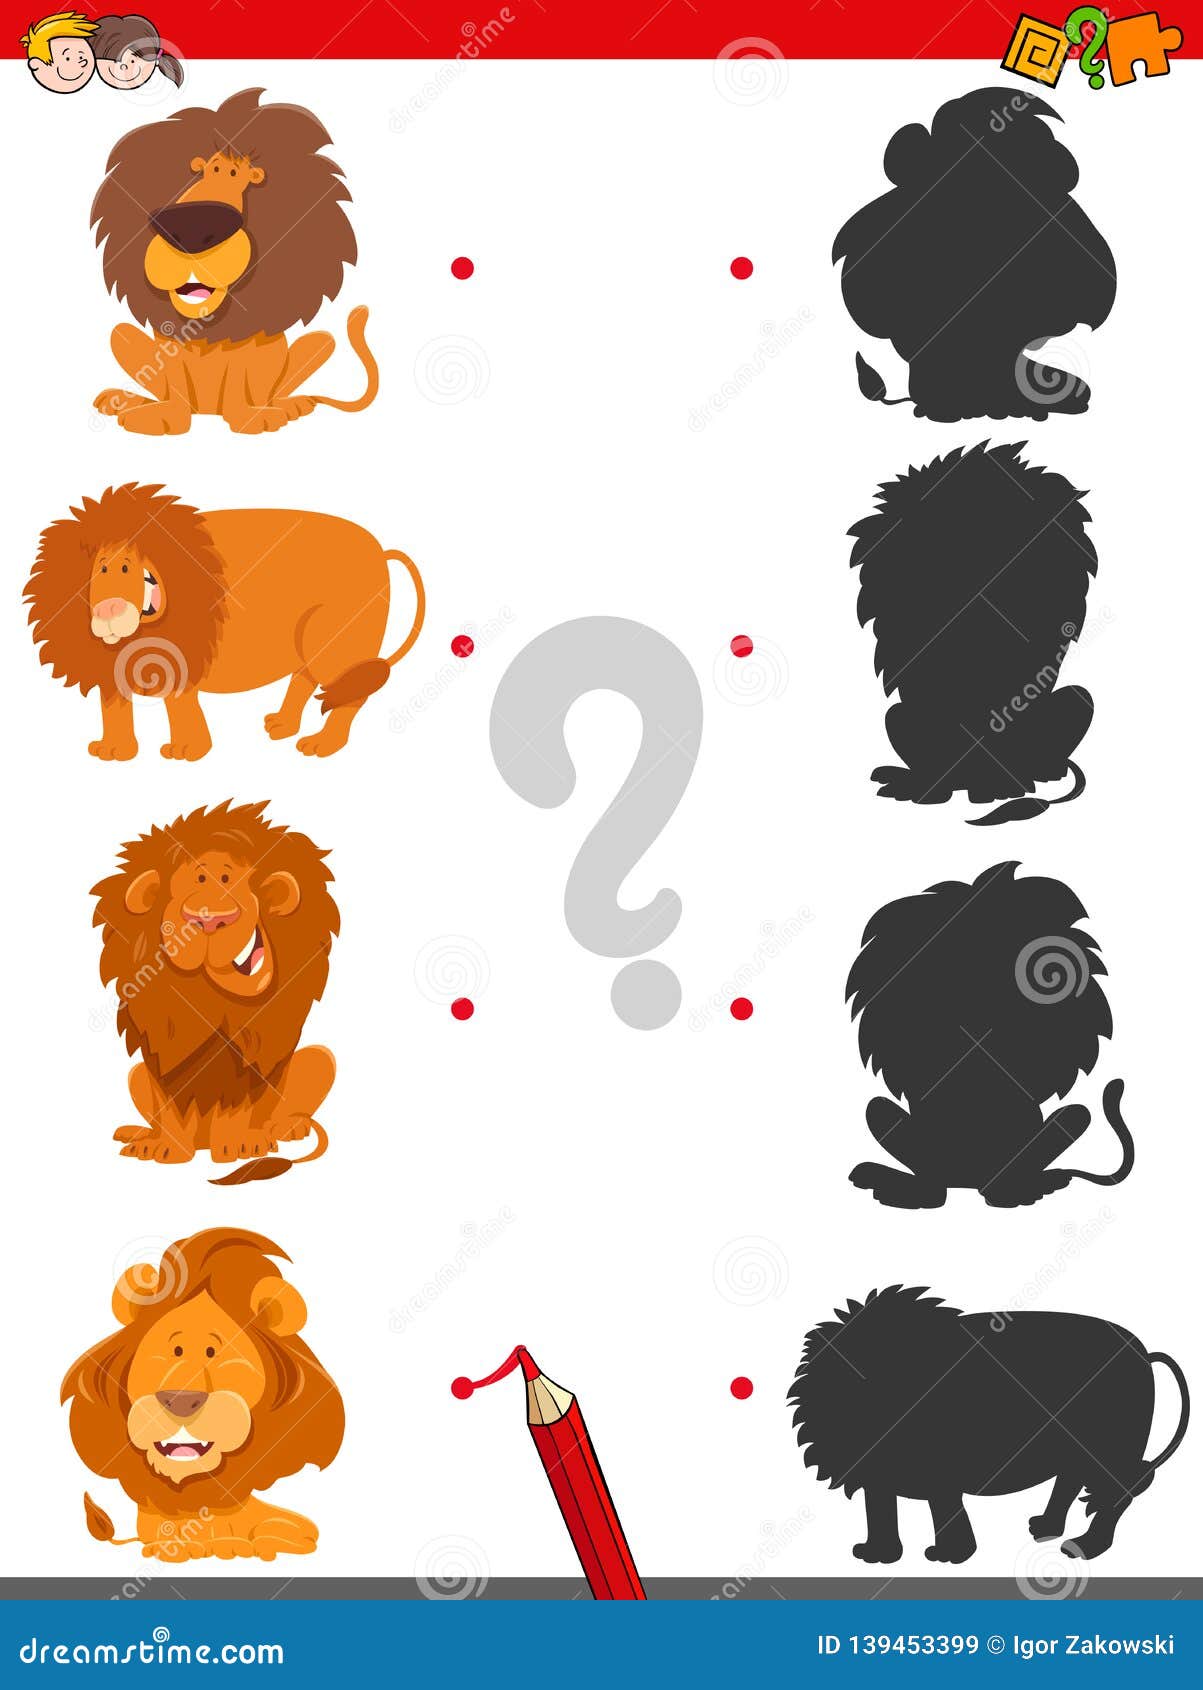 Jogo De Diferenças Com Leões De Desenhos Animados Personagens De Animais  Solução De Jogo Infantil Vetor PNG , Crianças, Jogos, Solução Imagem PNG e  Vetor Para Download Gratuito